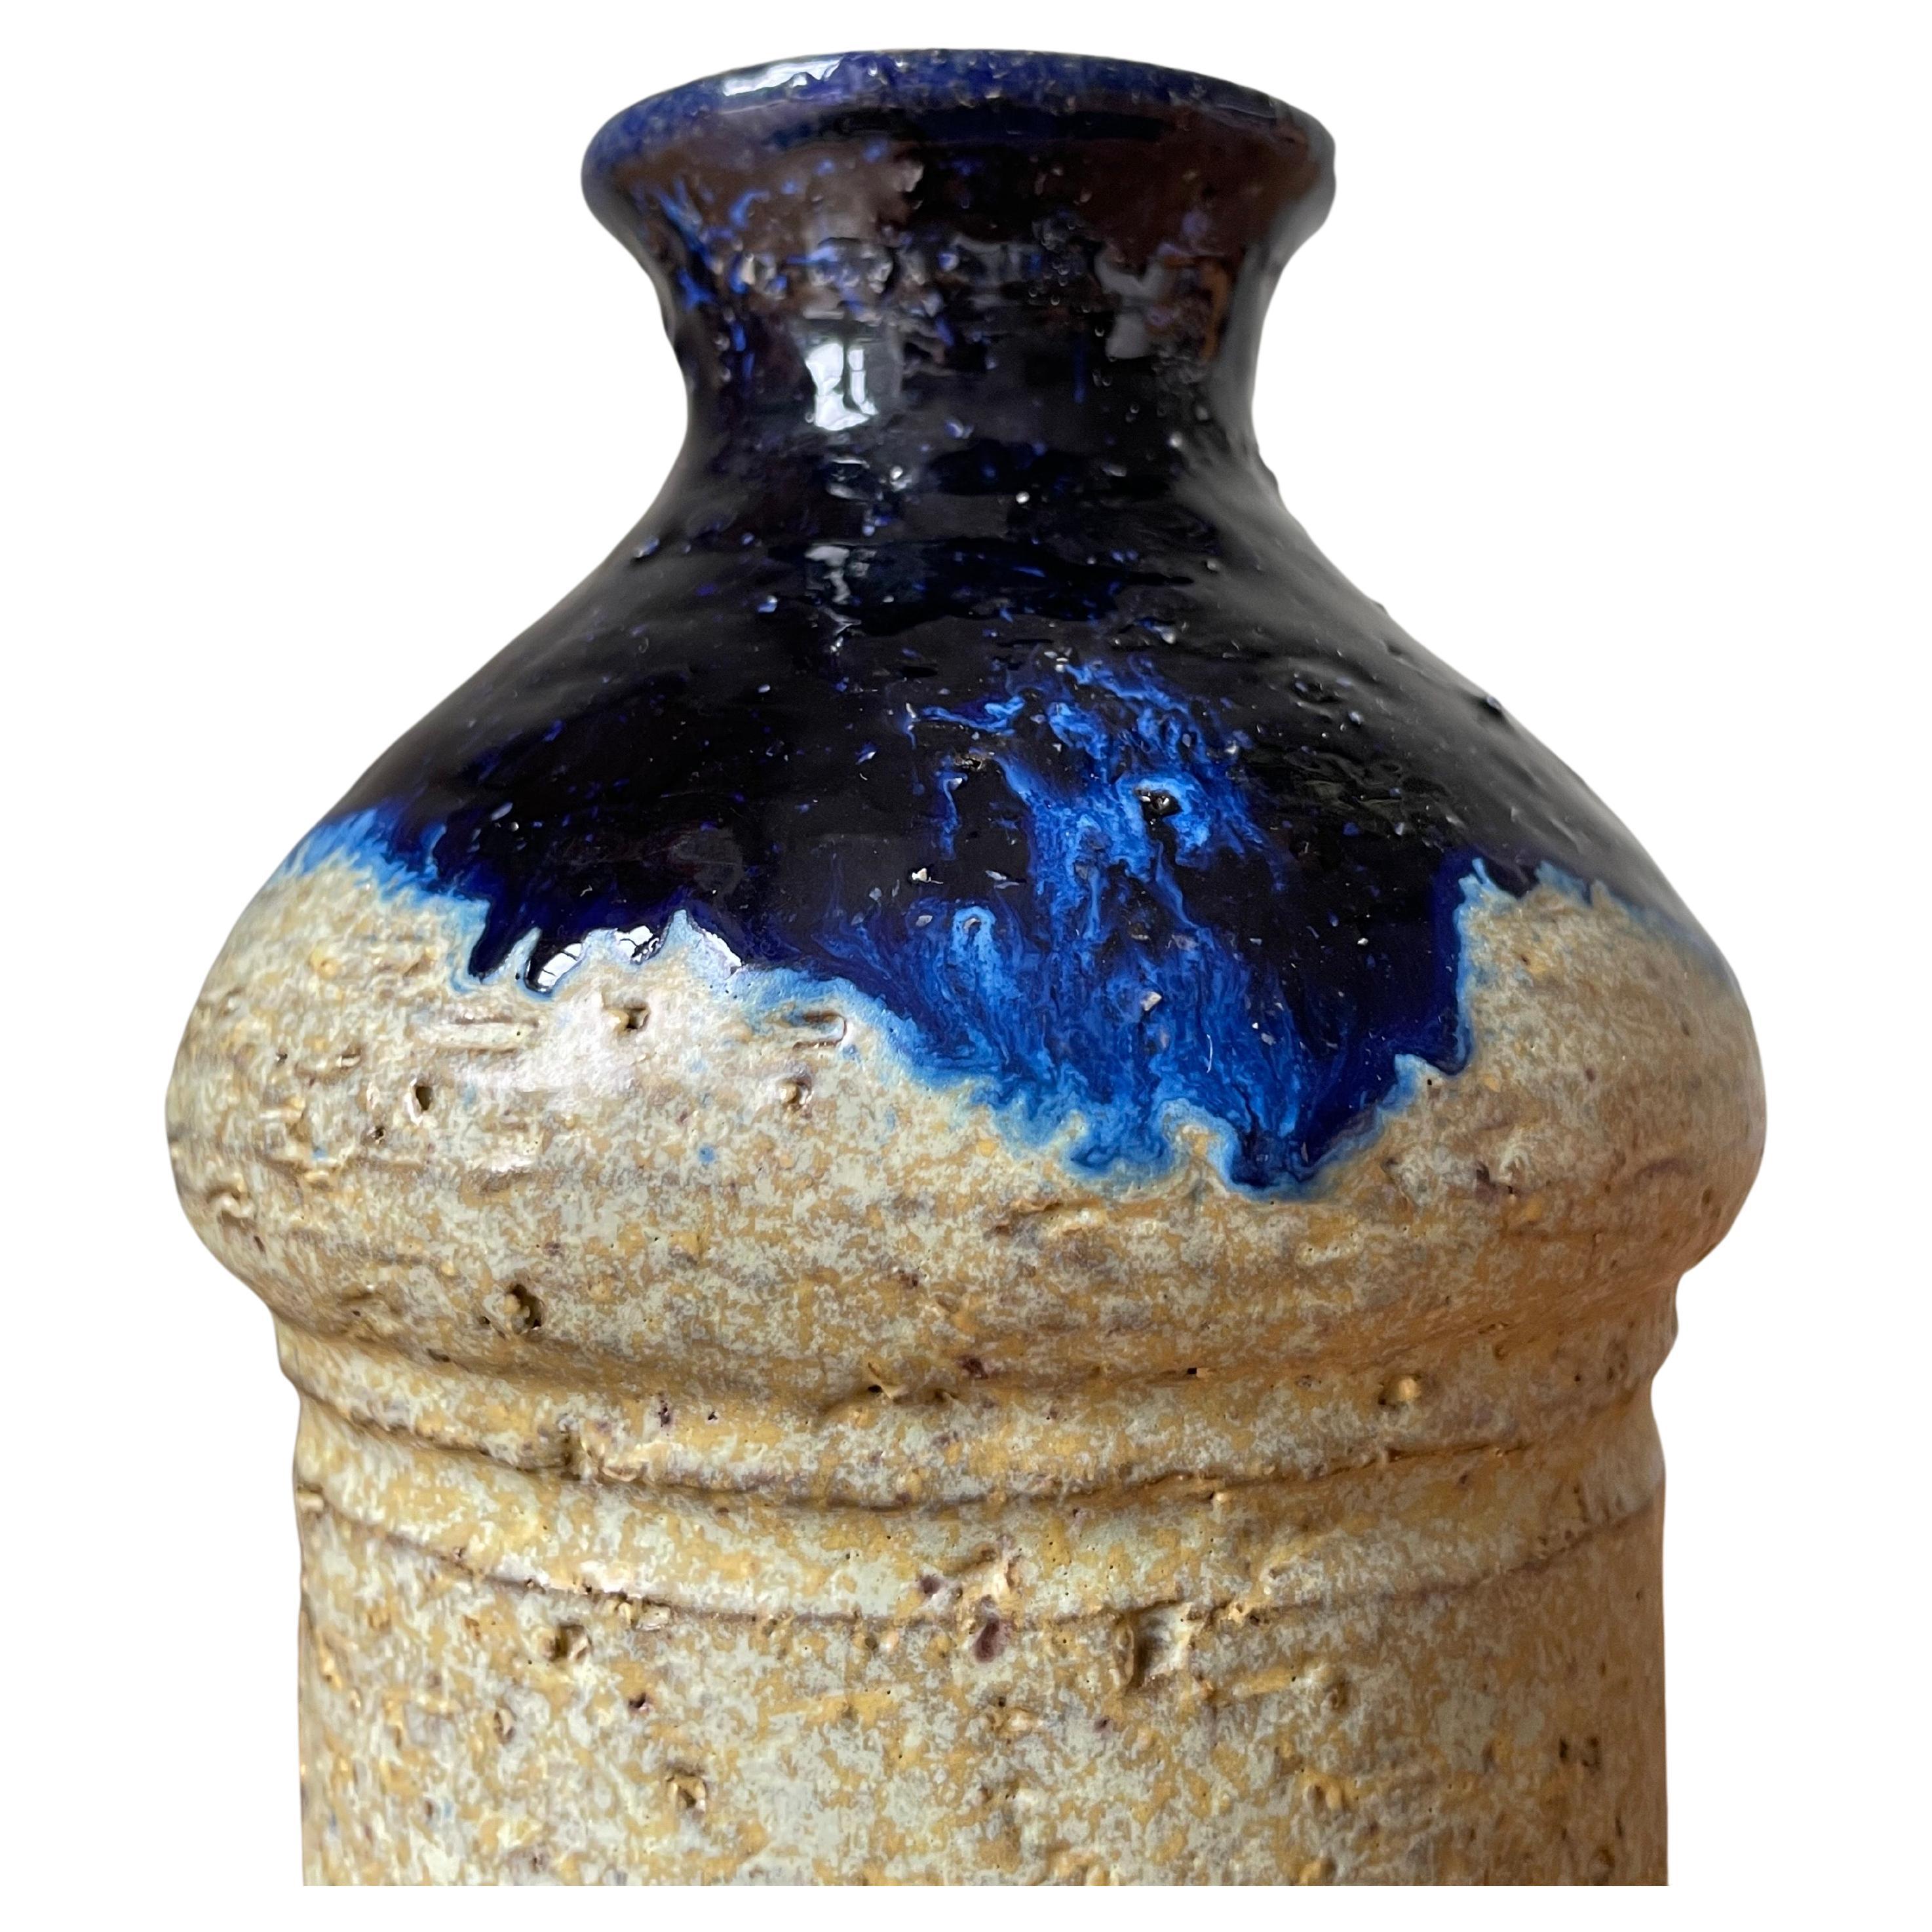 Vase en céramique rustique incurvé avec un corps en forme de cylindre de couleur sable. Le sommet arrondi est recouvert d'une glaçure brillante bleu foncé, tandis que la base est laissée brute et non glaçurée. Fabriqué au Danemark dans les années